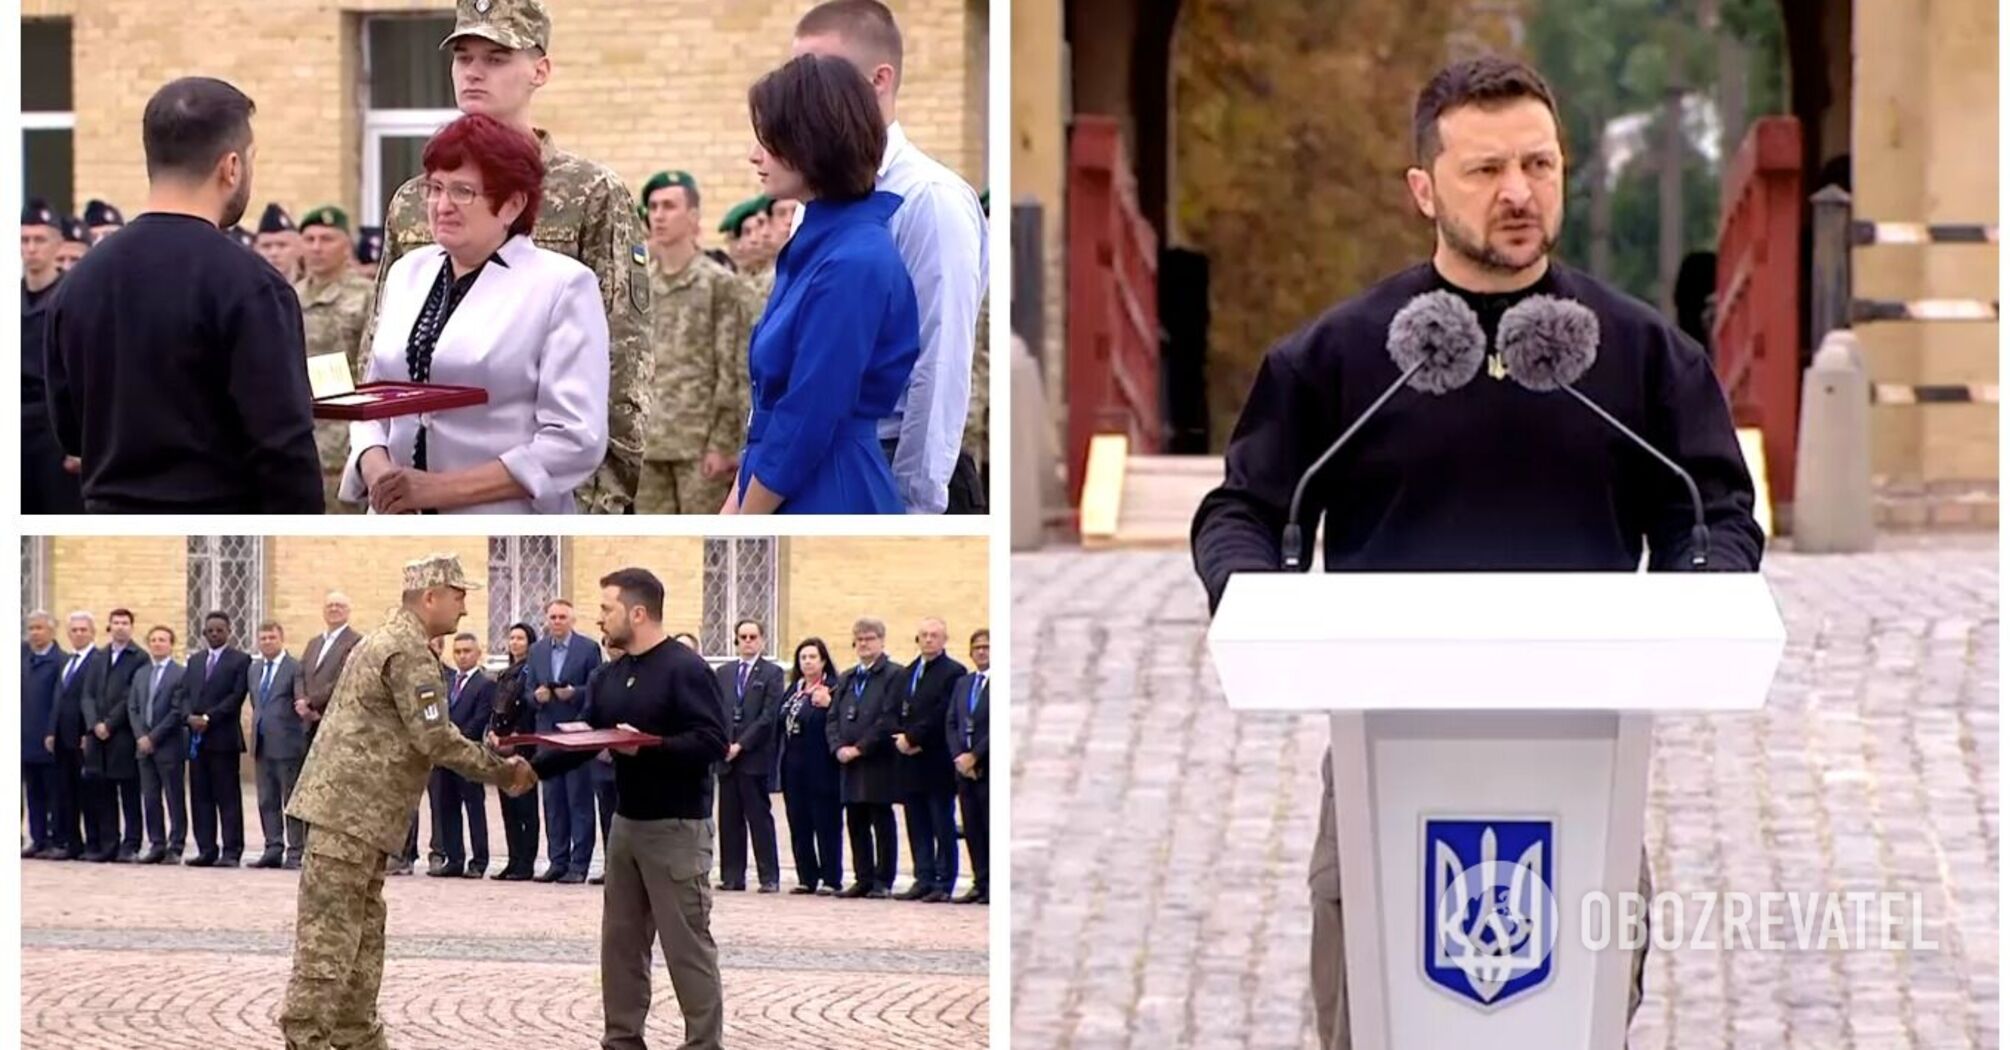 Będzie zwycięstwo! Zeleński wręczył odznaczenia państwowe obrońcom Ukrainy w Kijowie. Wideo